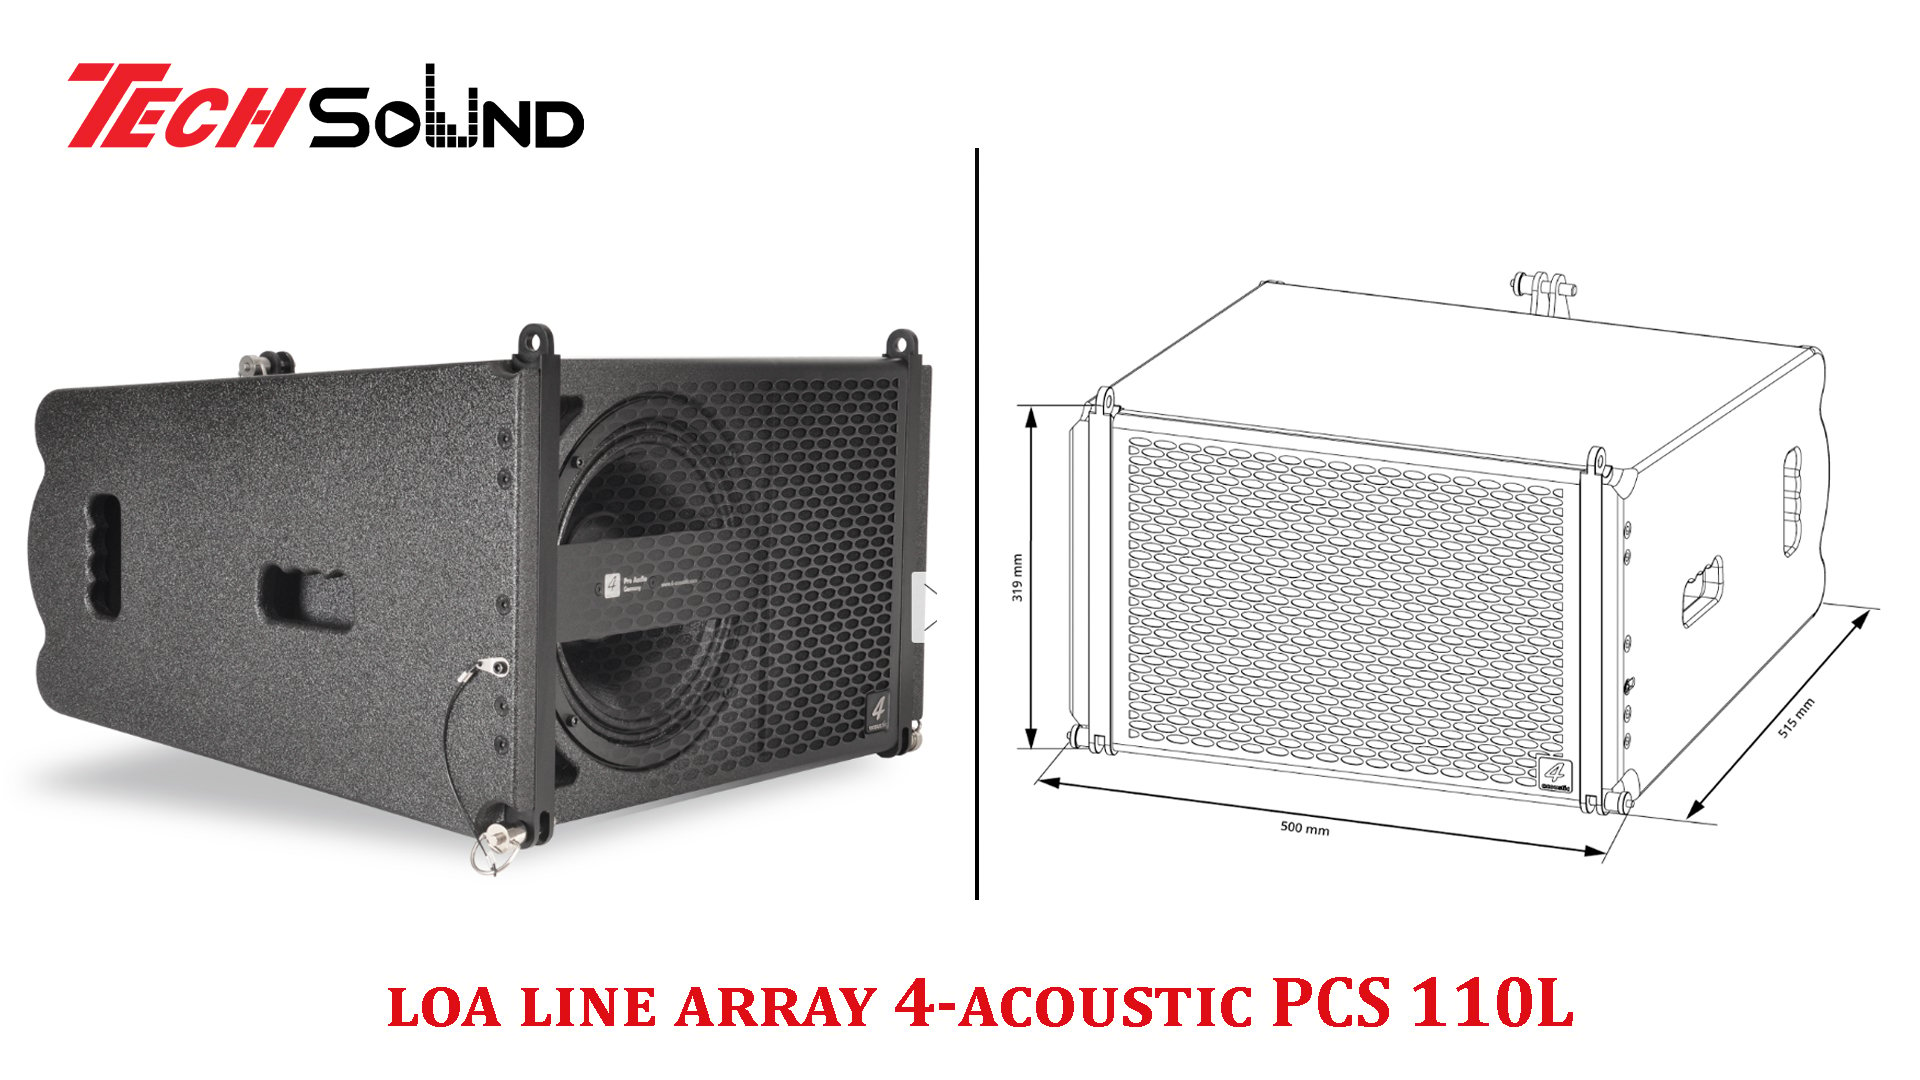 Loa line array 4-acoustic PCS 110L